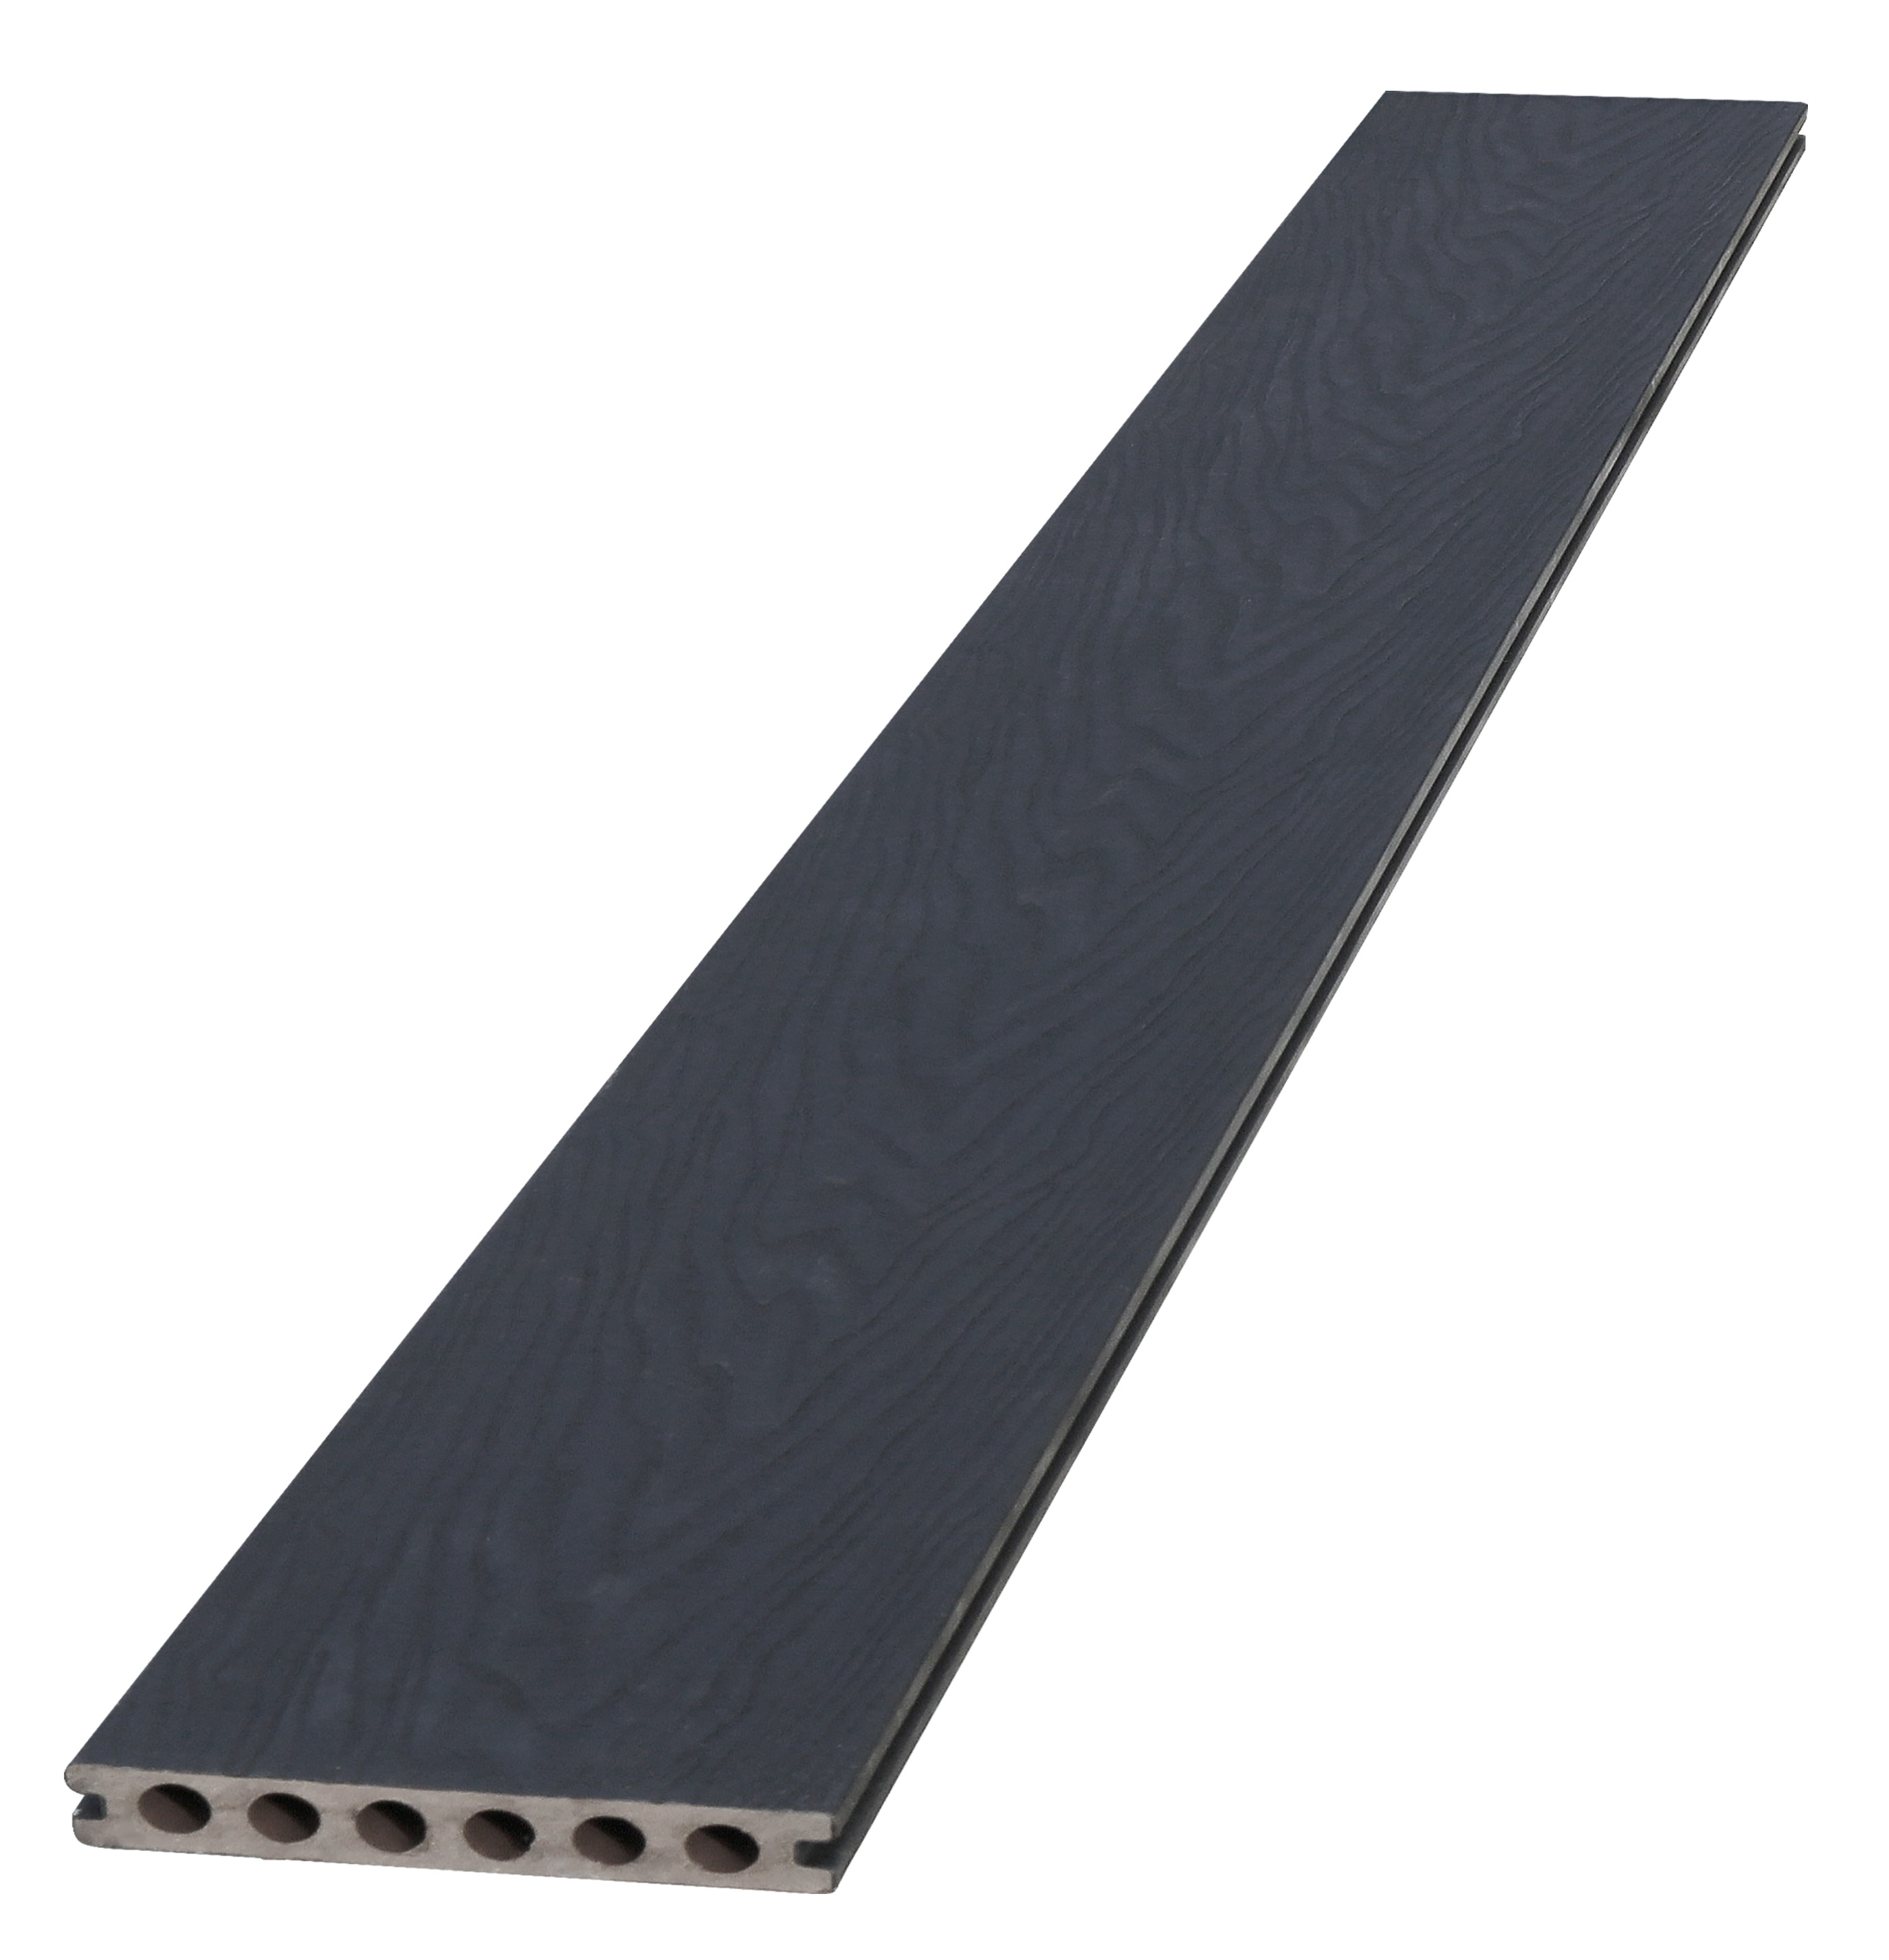 Woodvision composiet vlonderplank met co-extrusie, zwart, 2.3 x 14.5 x 420 cm